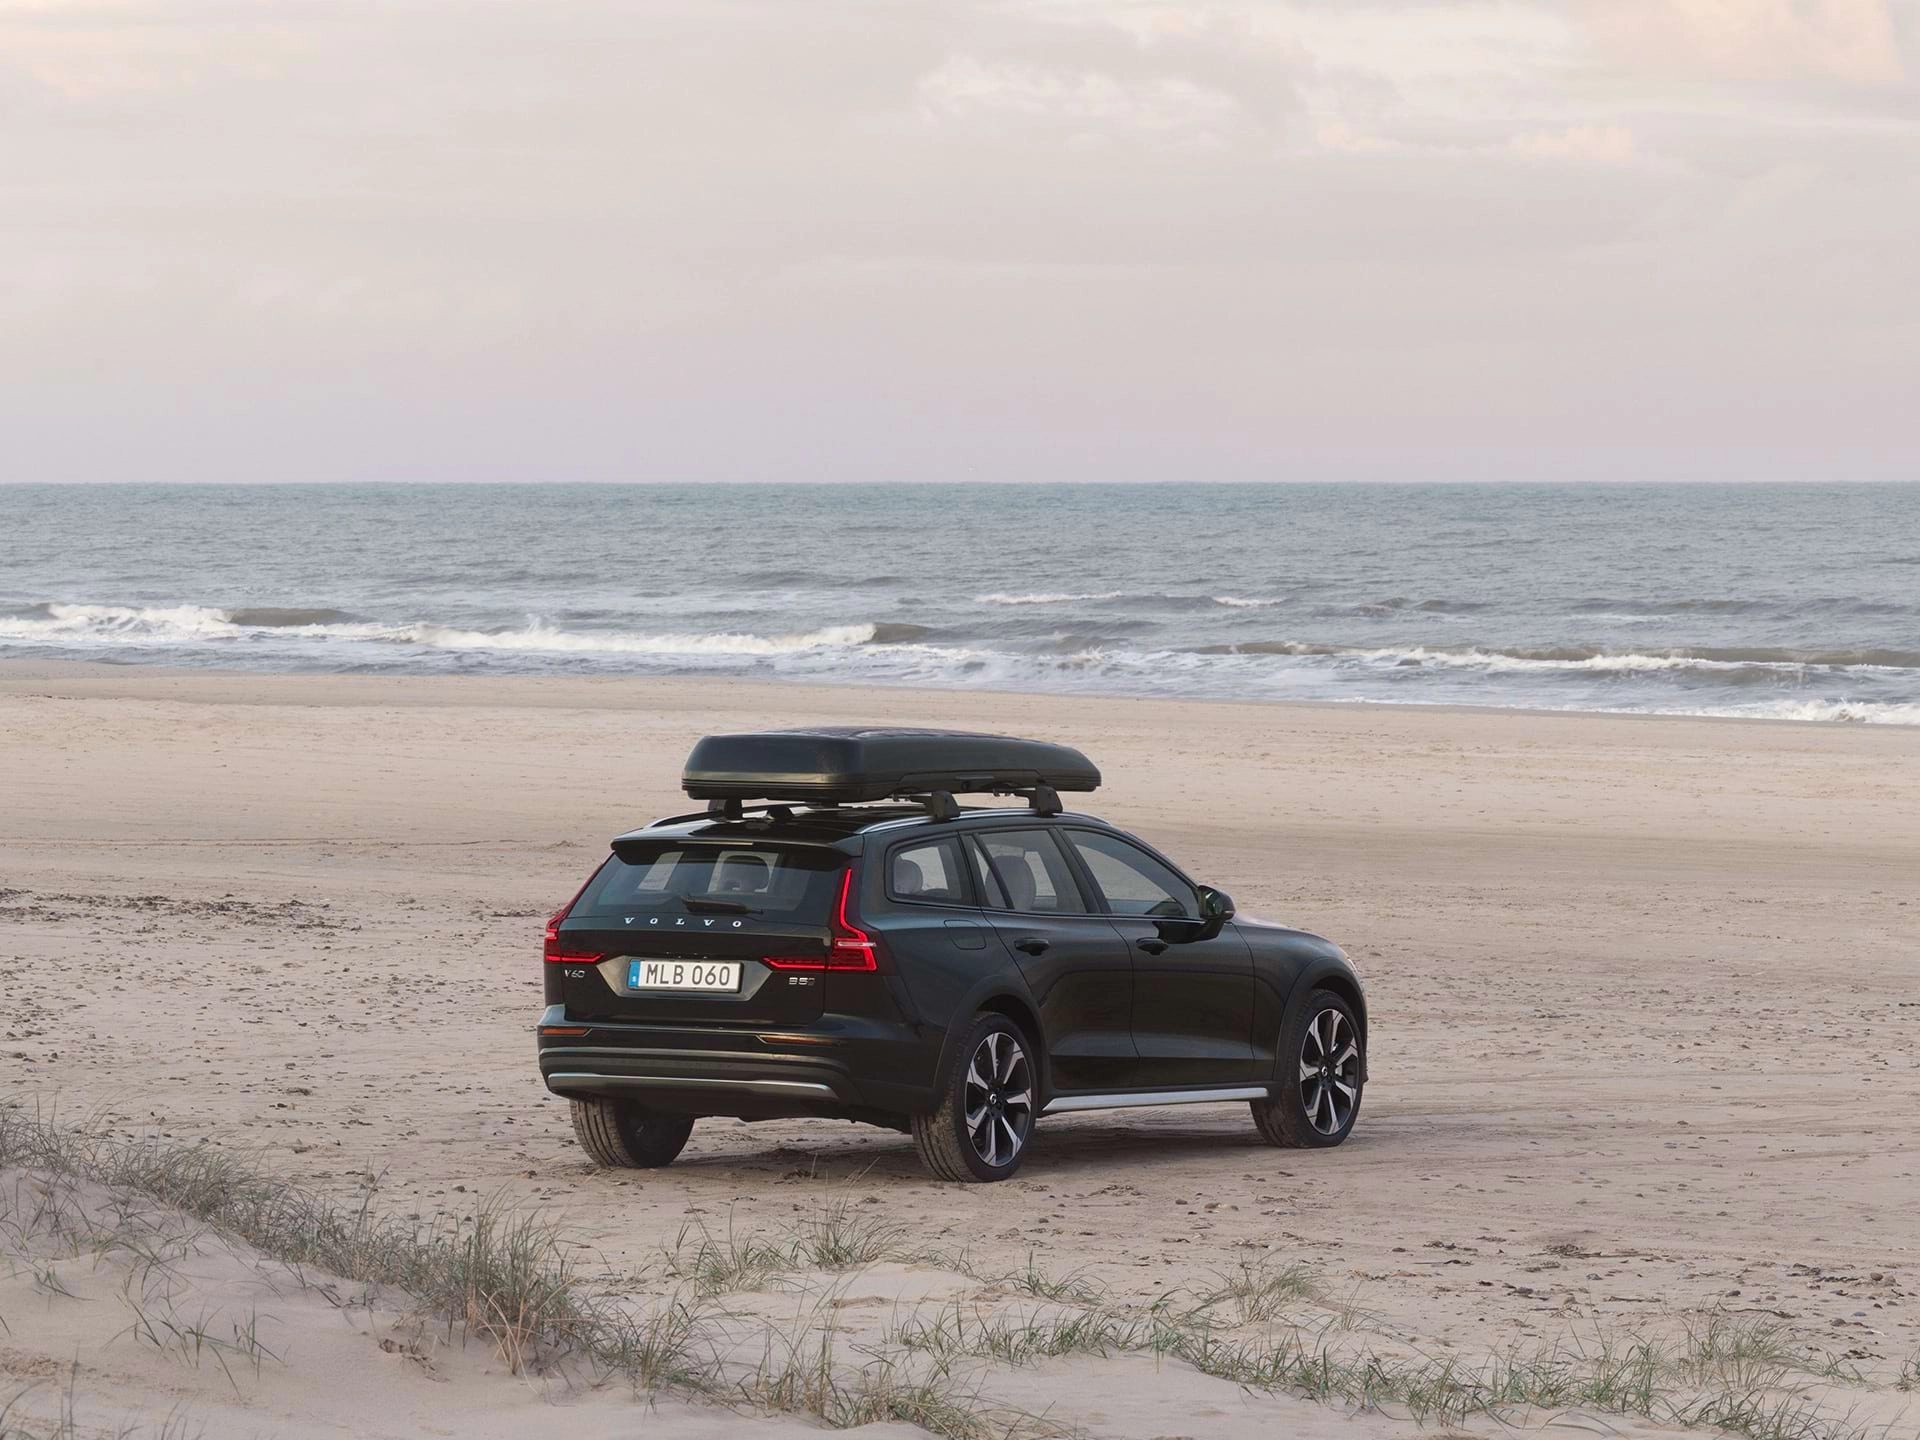 Una station wagon Volvo con box sul tetto parcheggiata su una spiaggia sabbiosa.